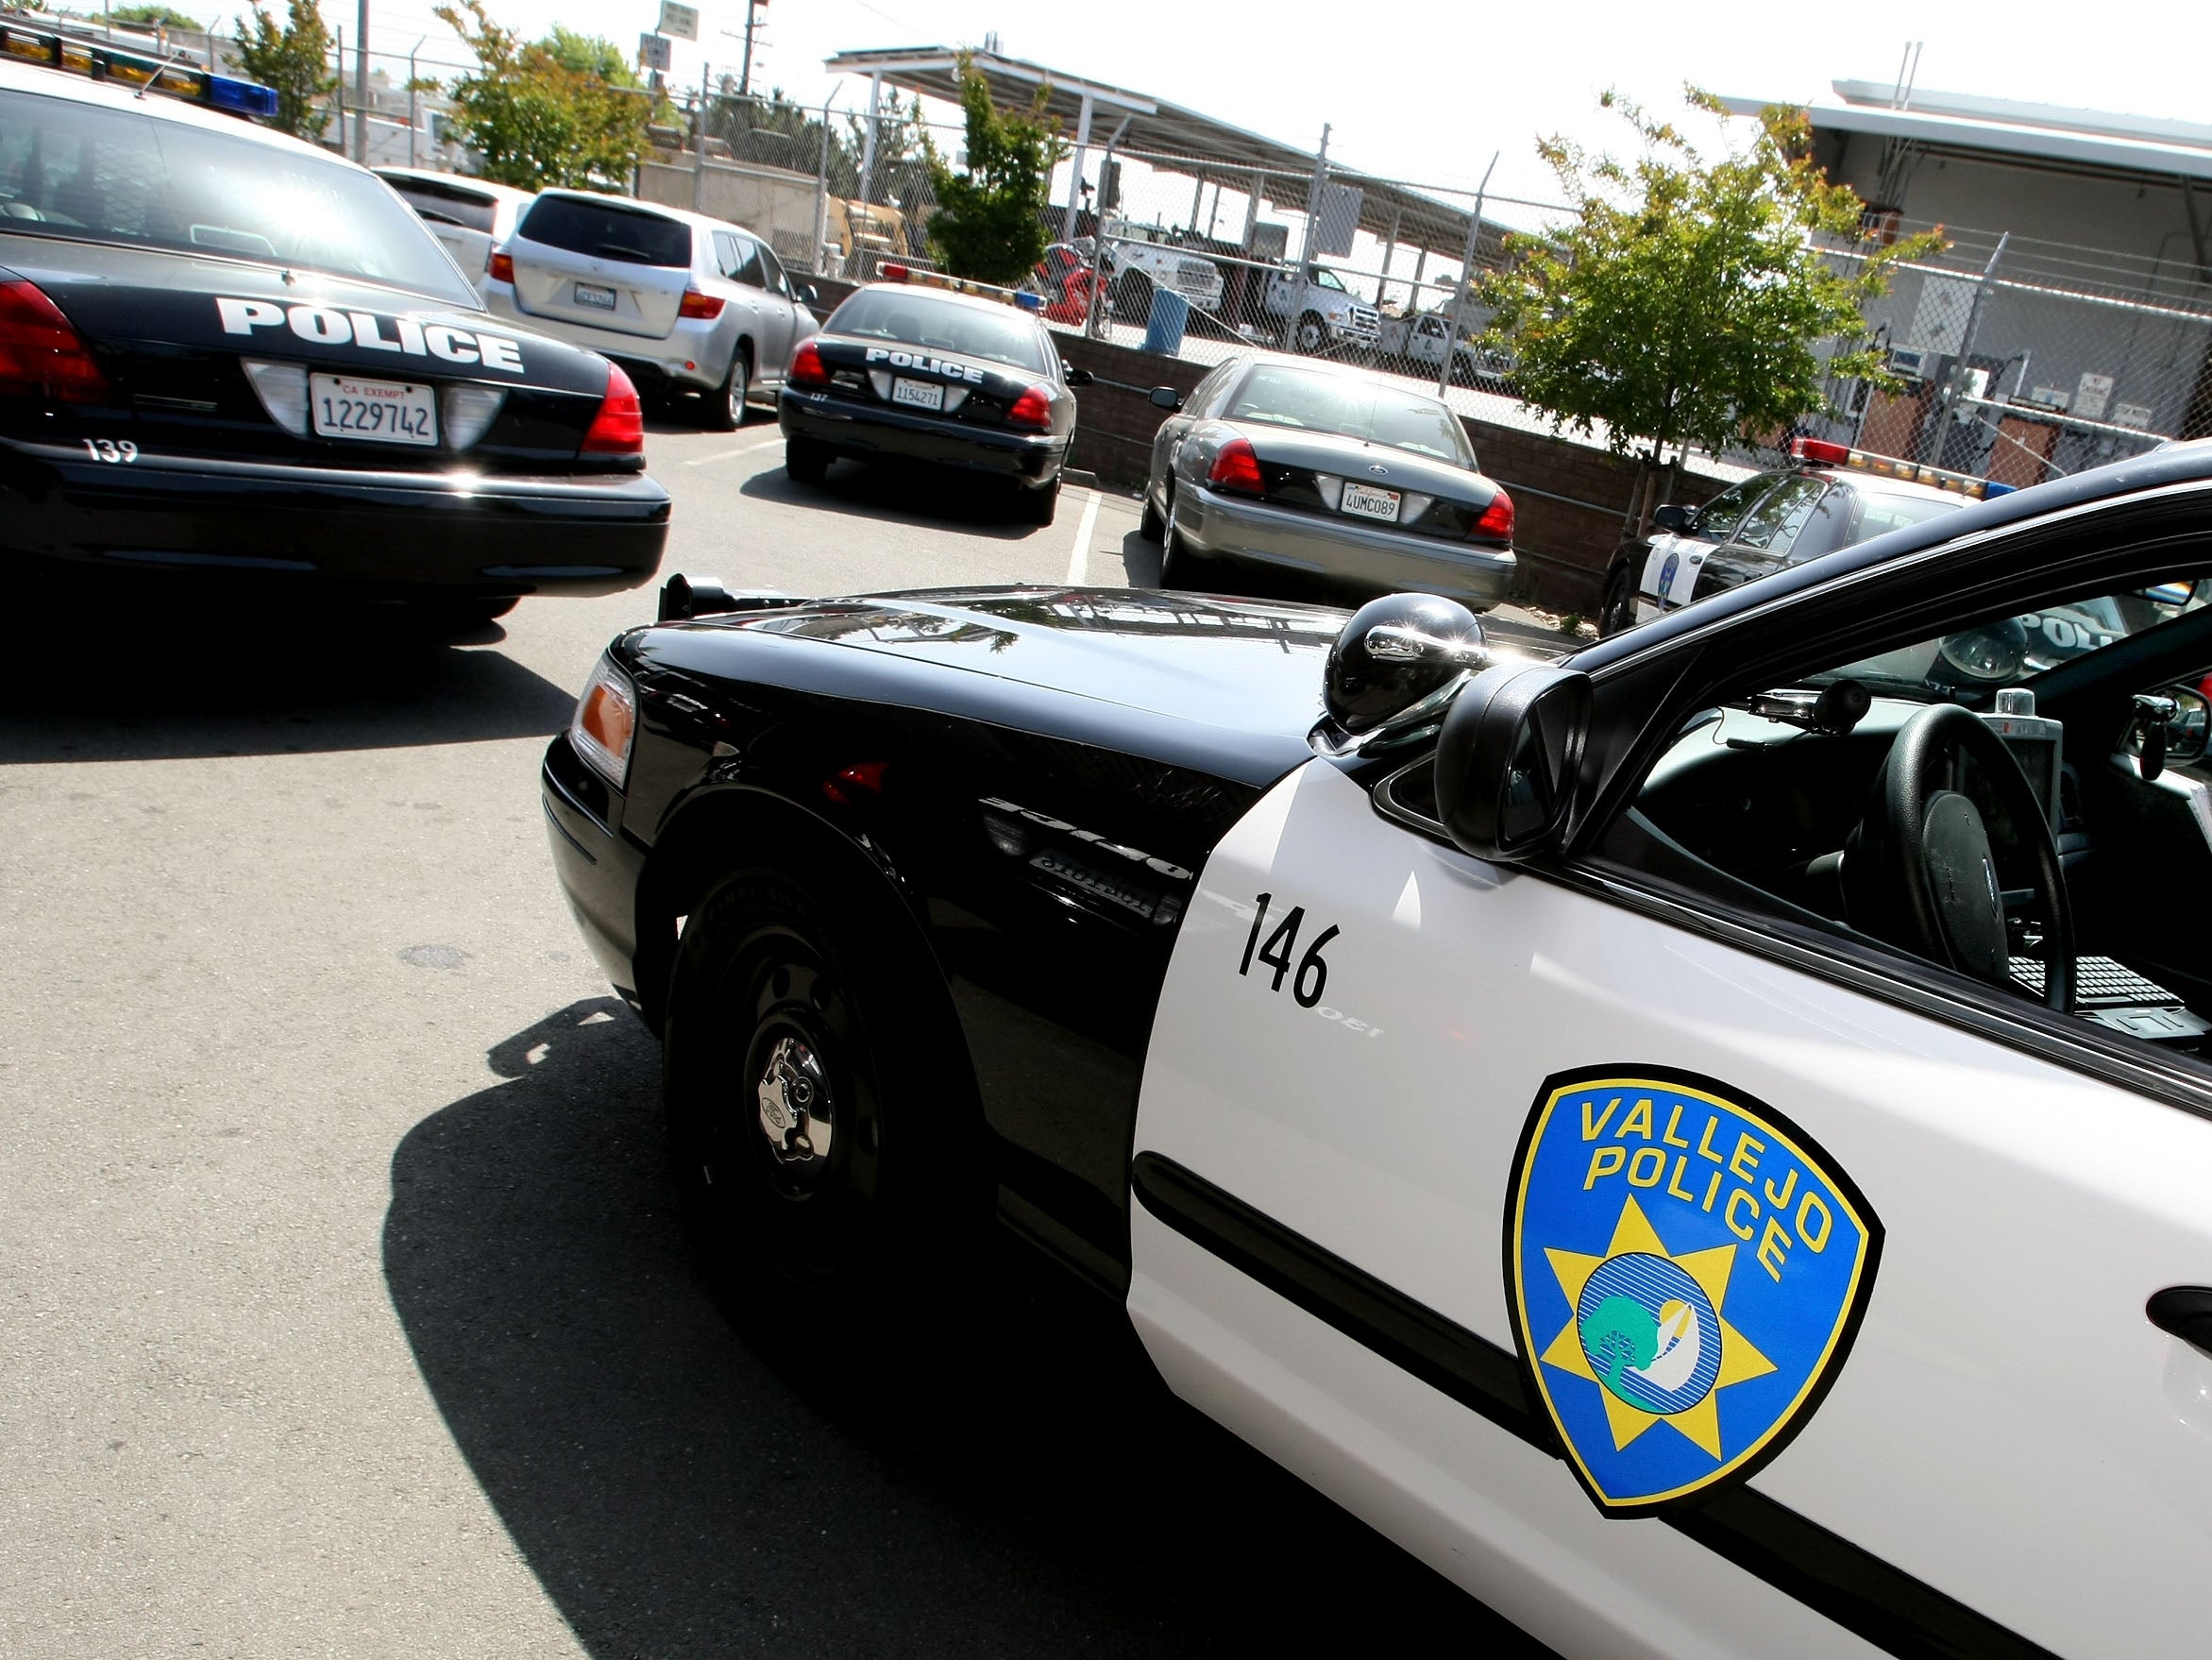 Police cars in Vallejo, California in May 2008